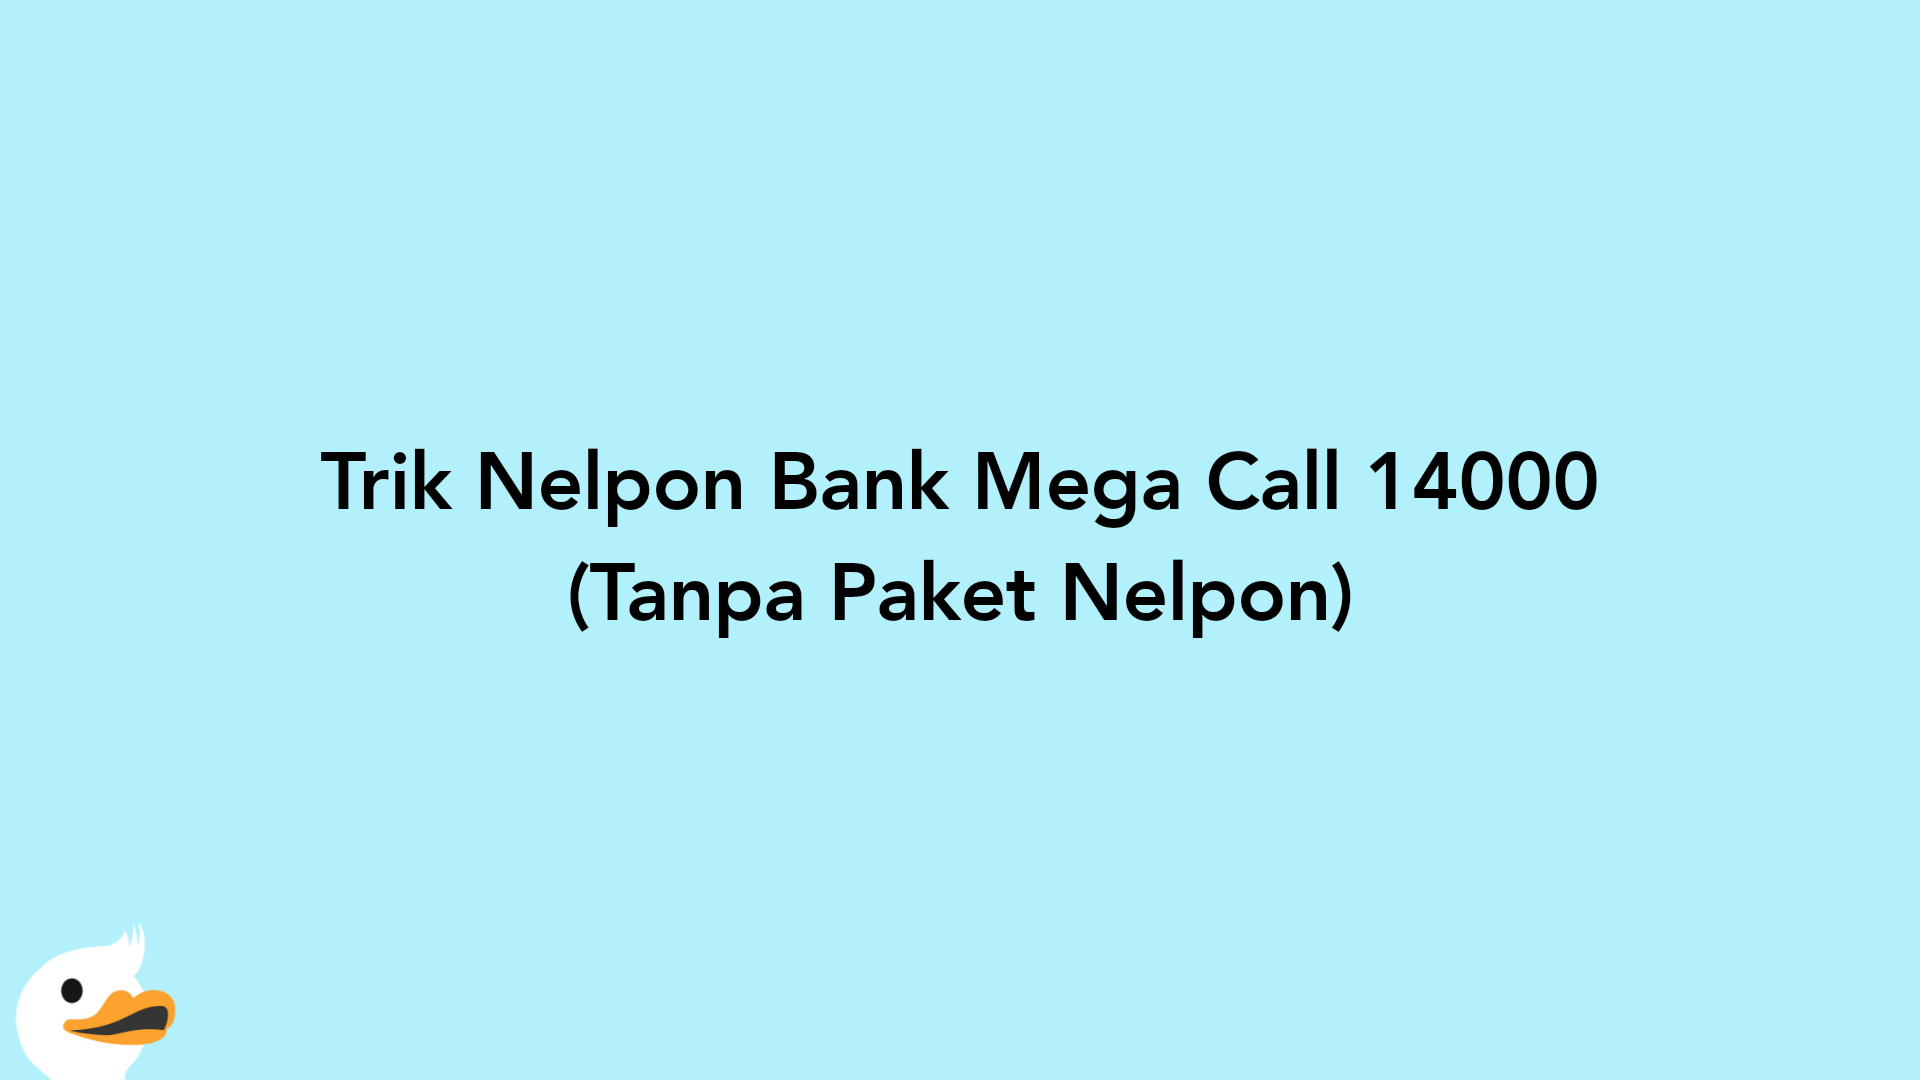 Trik Nelpon Bank Mega Call 14000 (Tanpa Paket Nelpon)